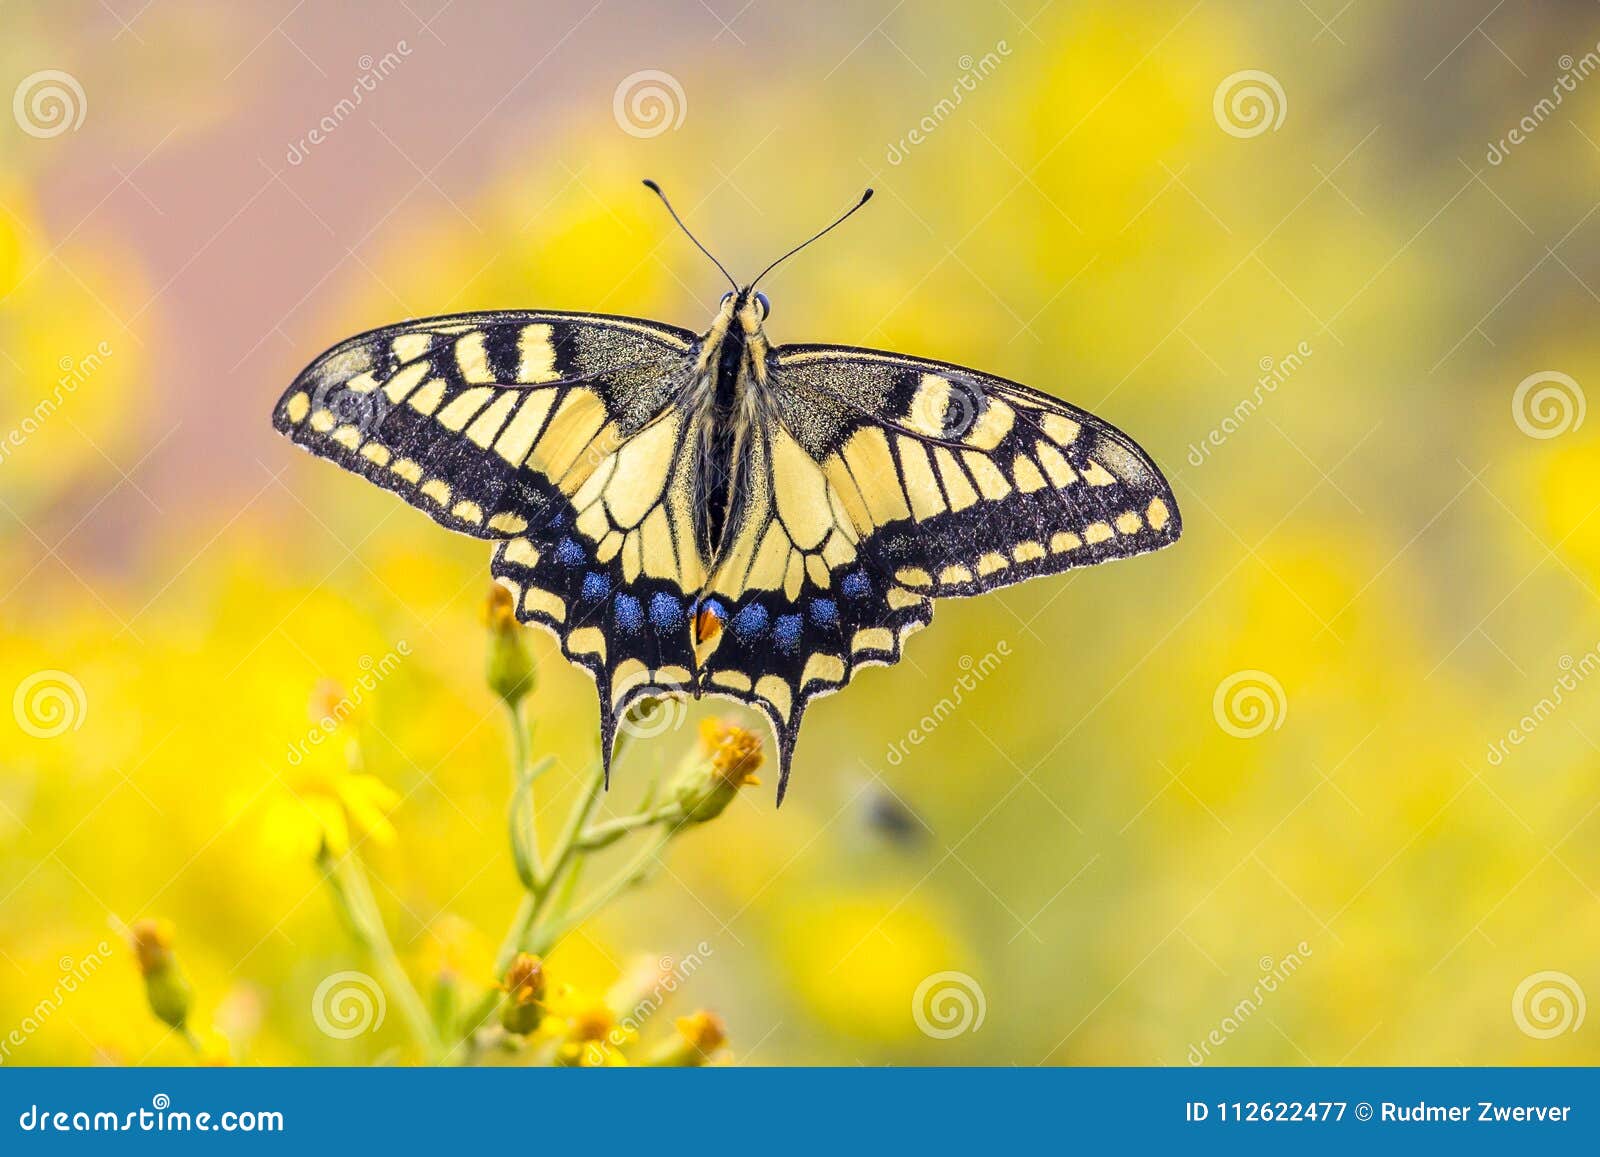 Fjäril Swallowtail på gul bakgrund. Swallowtailfjärilen för den gamla världen (Papilio machaon) sätta sig på den gula blomman med suddig bakgrund